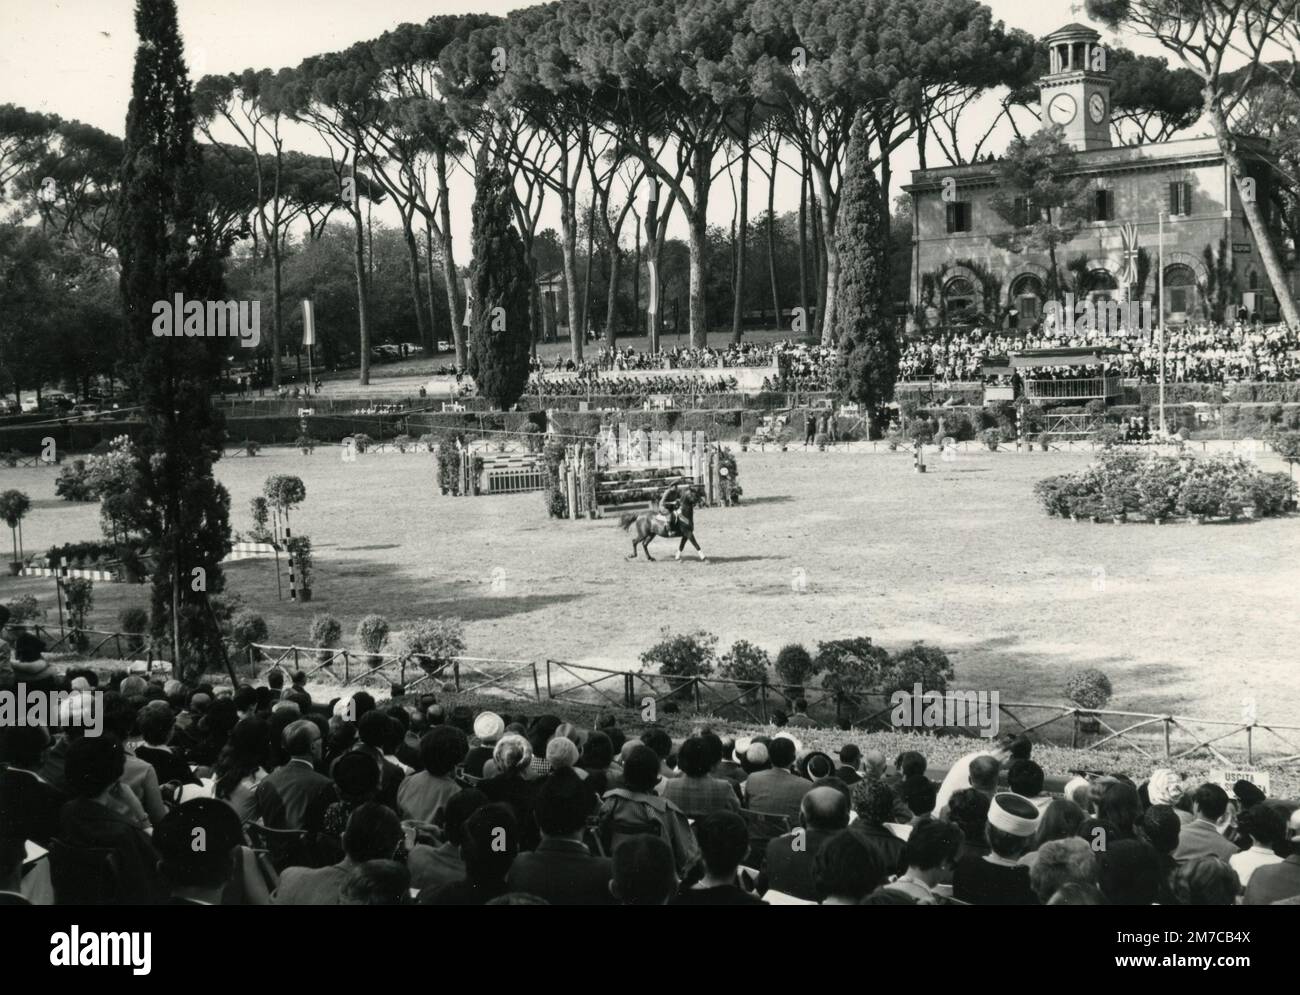 Vue sur le spectacle équestre de Piazza di Siena, Rome, Italie 1960s Banque D'Images